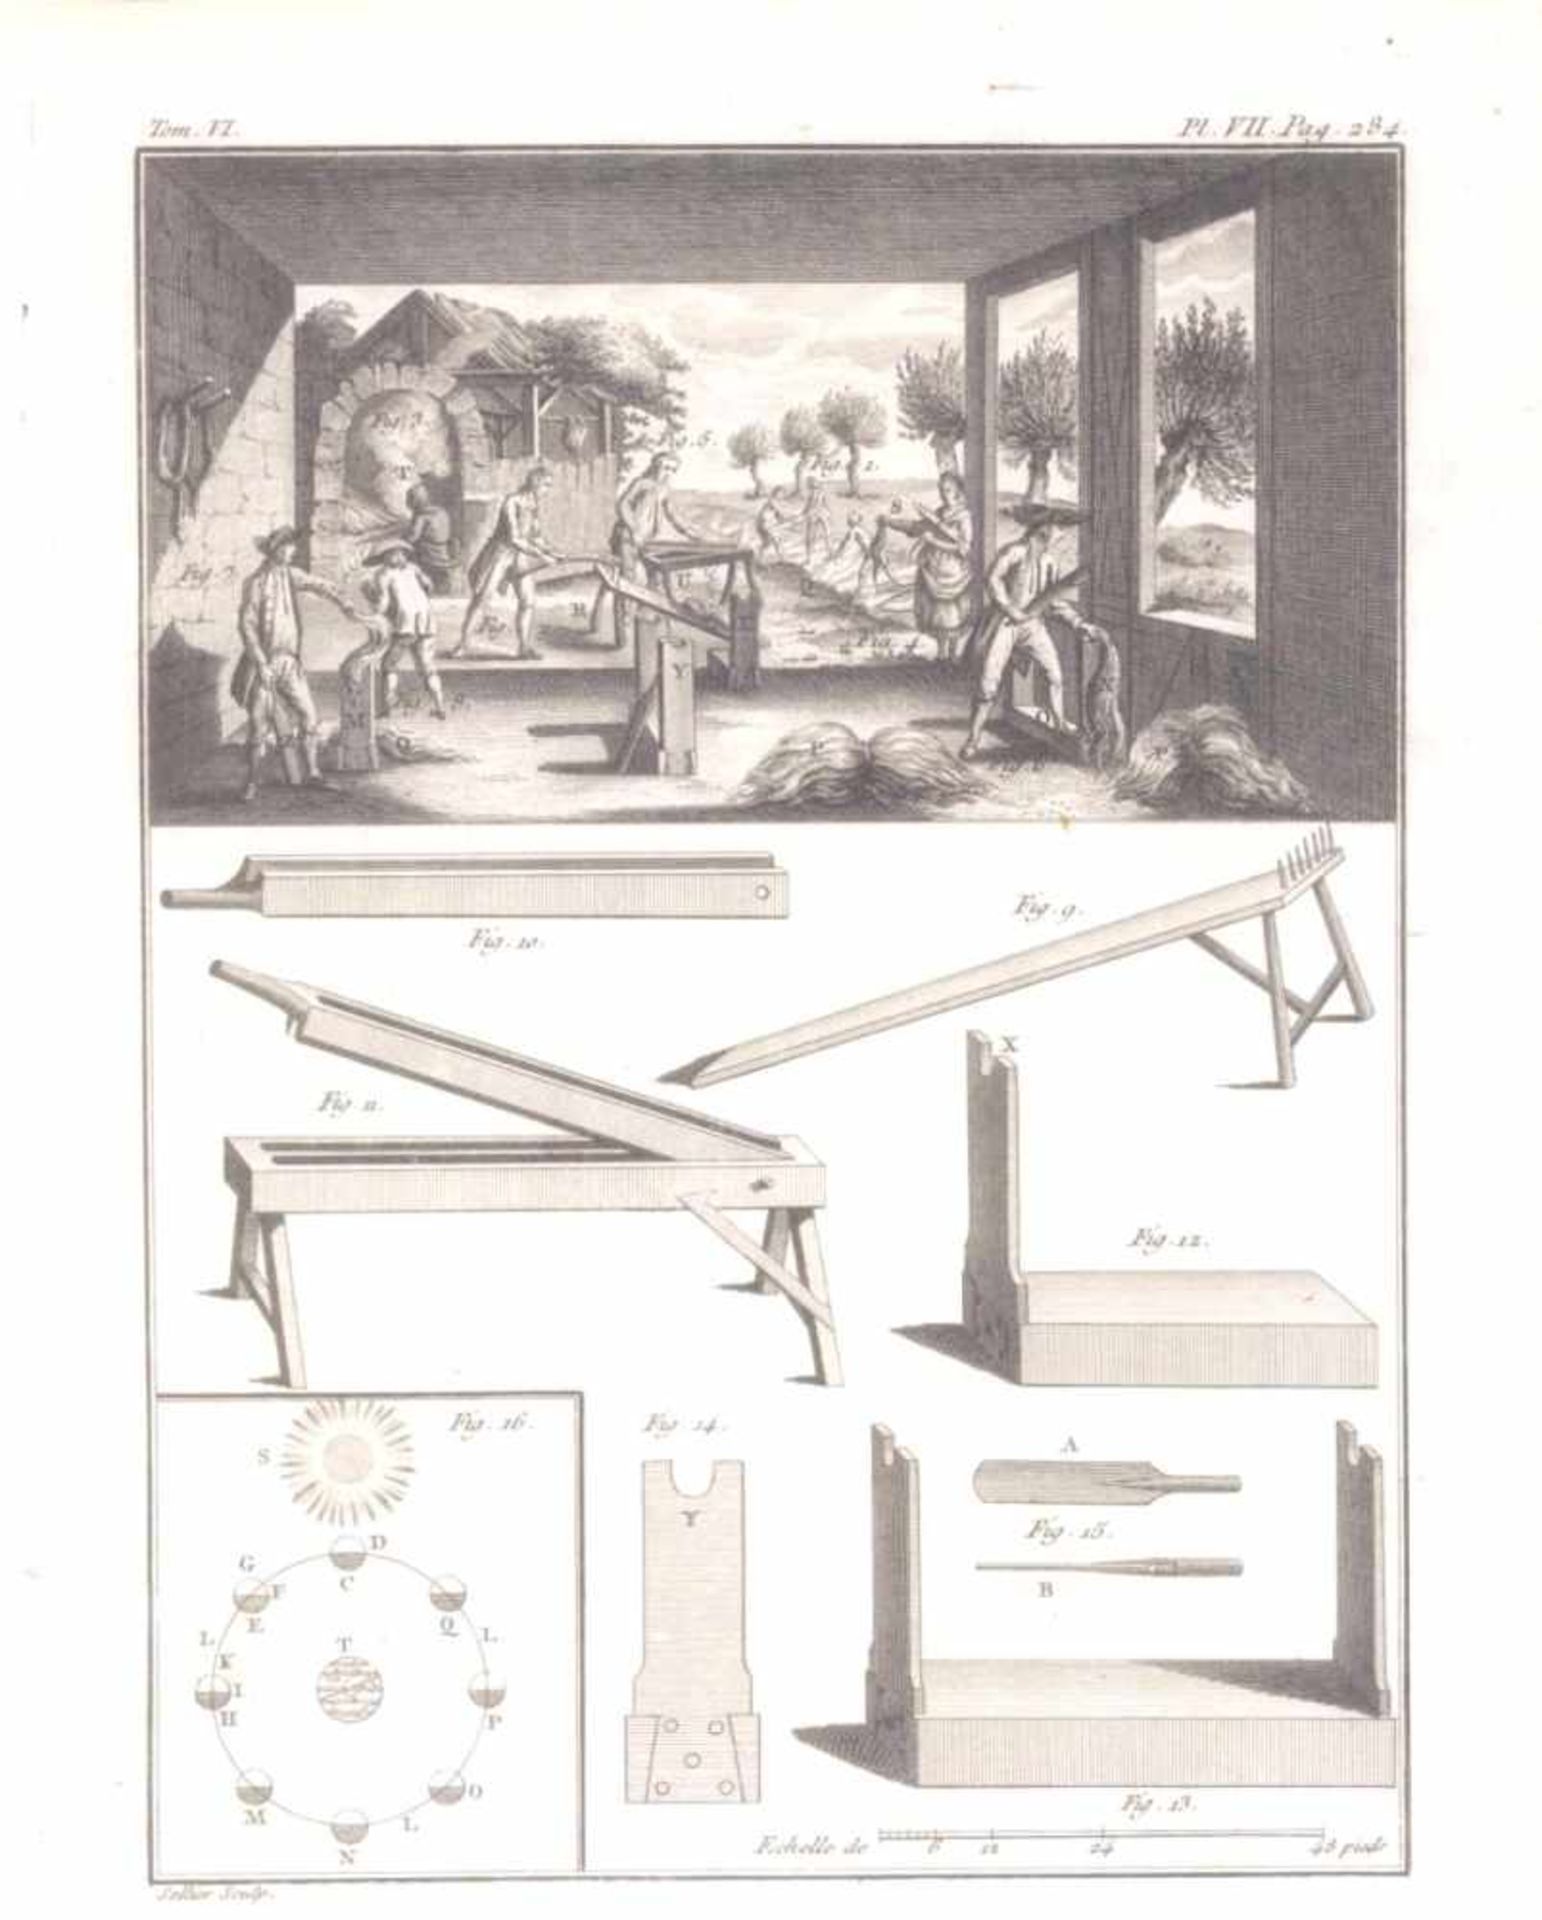 Joseph Wagner (1706-1780) Berufe- Landwirtschaft und MühlenDreschmühle, sowie Rütelsieb- - Bild 5 aus 6